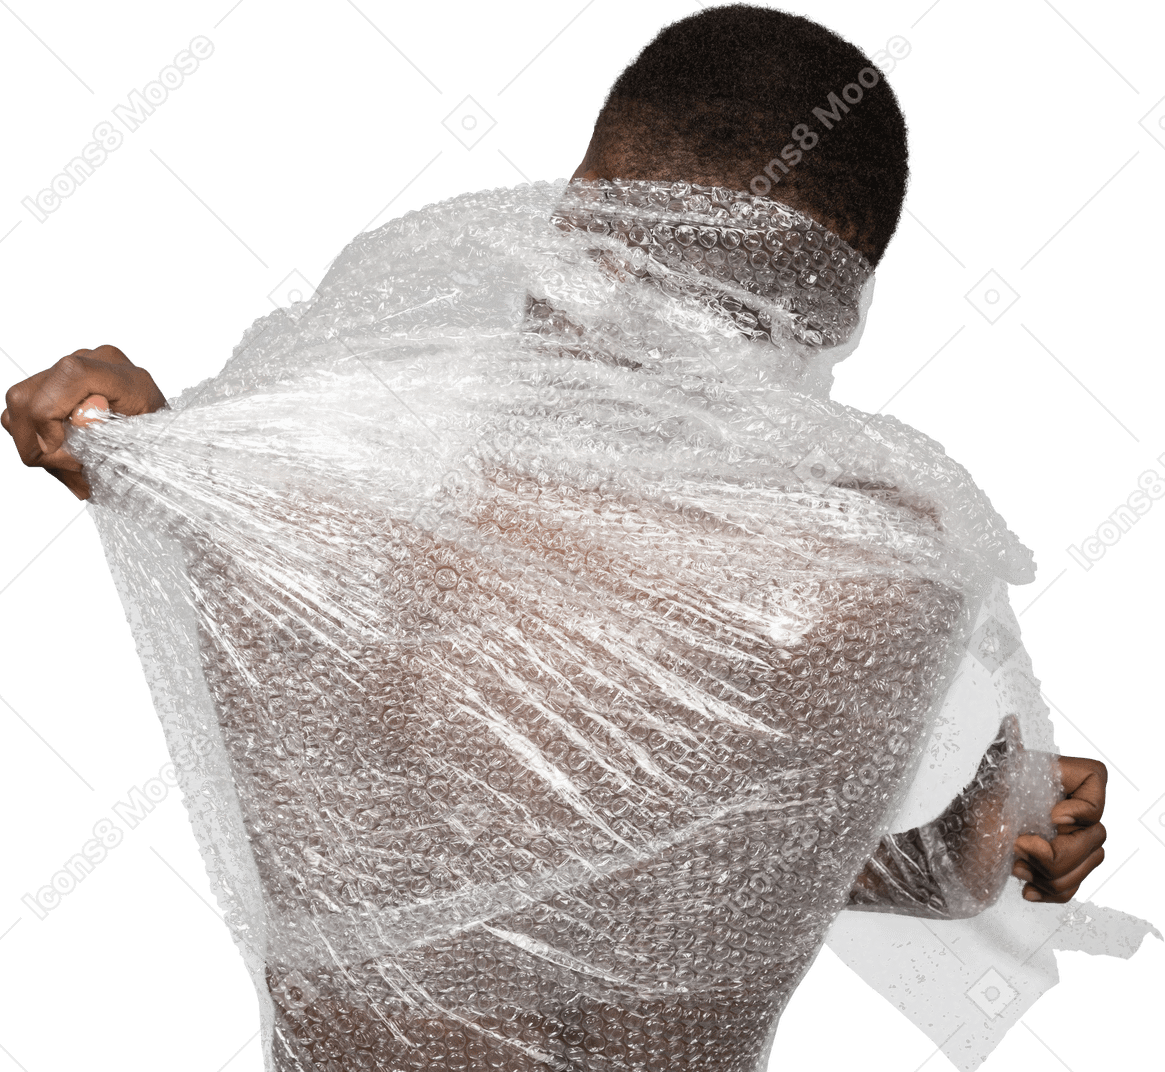 Vista da embalagem de um homem africano rasgando o filme plástico